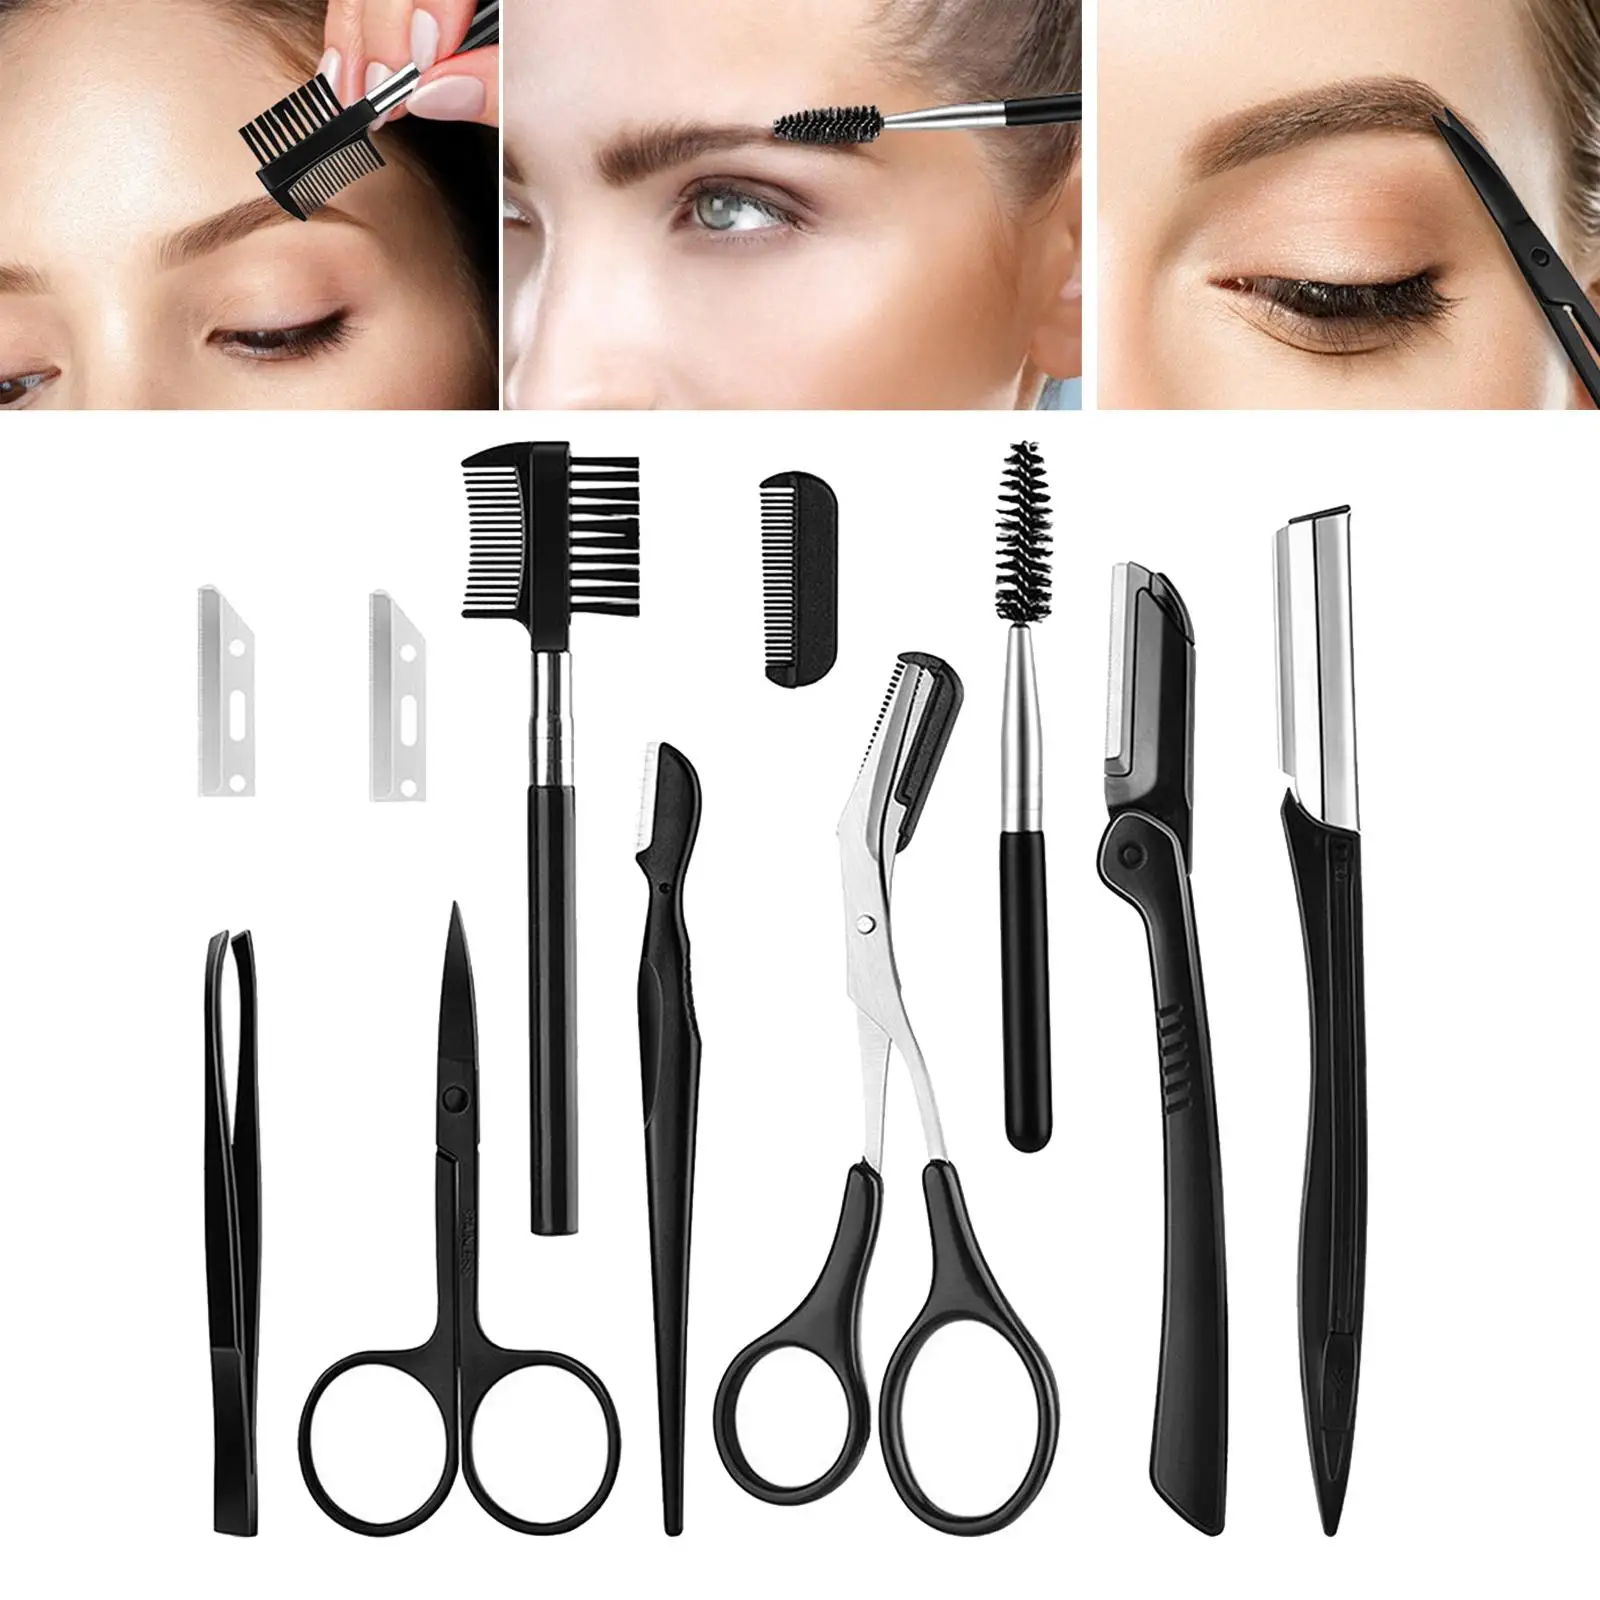 11 In 1 Pro Eyebrow Razor Facial Hair Trimmer Shaper Tweezer Scissors Brush Comb Eye Brow Grooming Kit for Men Women